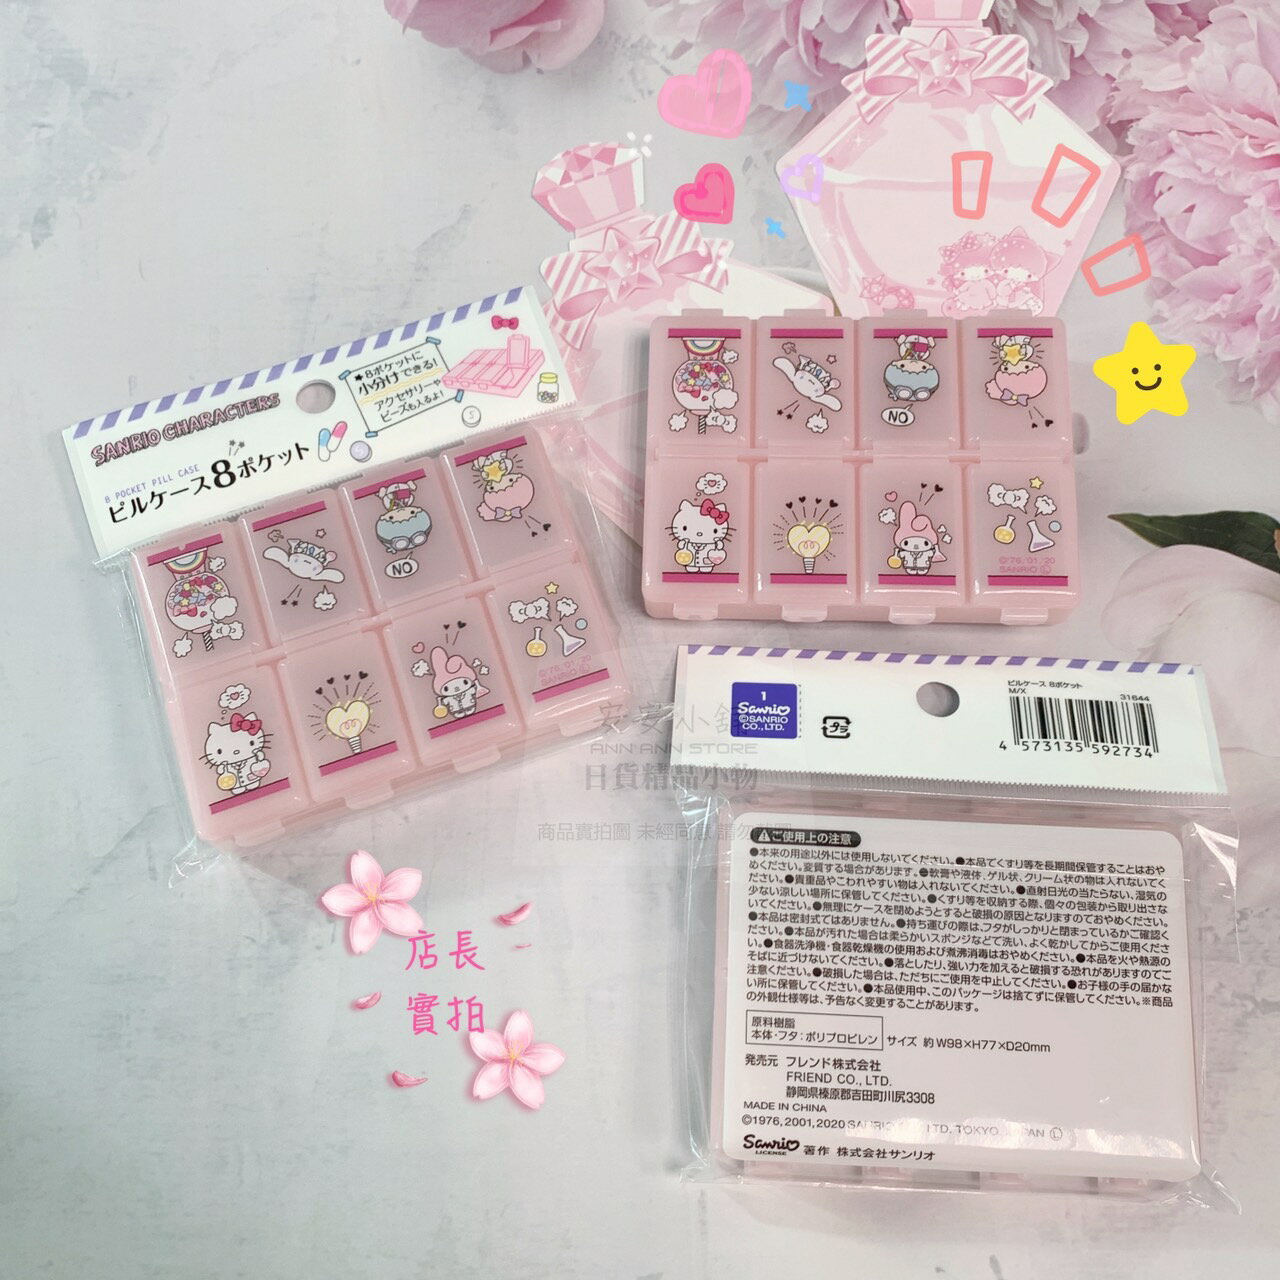 日本直送 三麗鷗 一個星期份藥盒 八格 收納 藥盒 凱蒂貓 雙子星 美樂蒂 大耳狗 便攜式 迷你藥盒 隨身藥品盒 藥盒